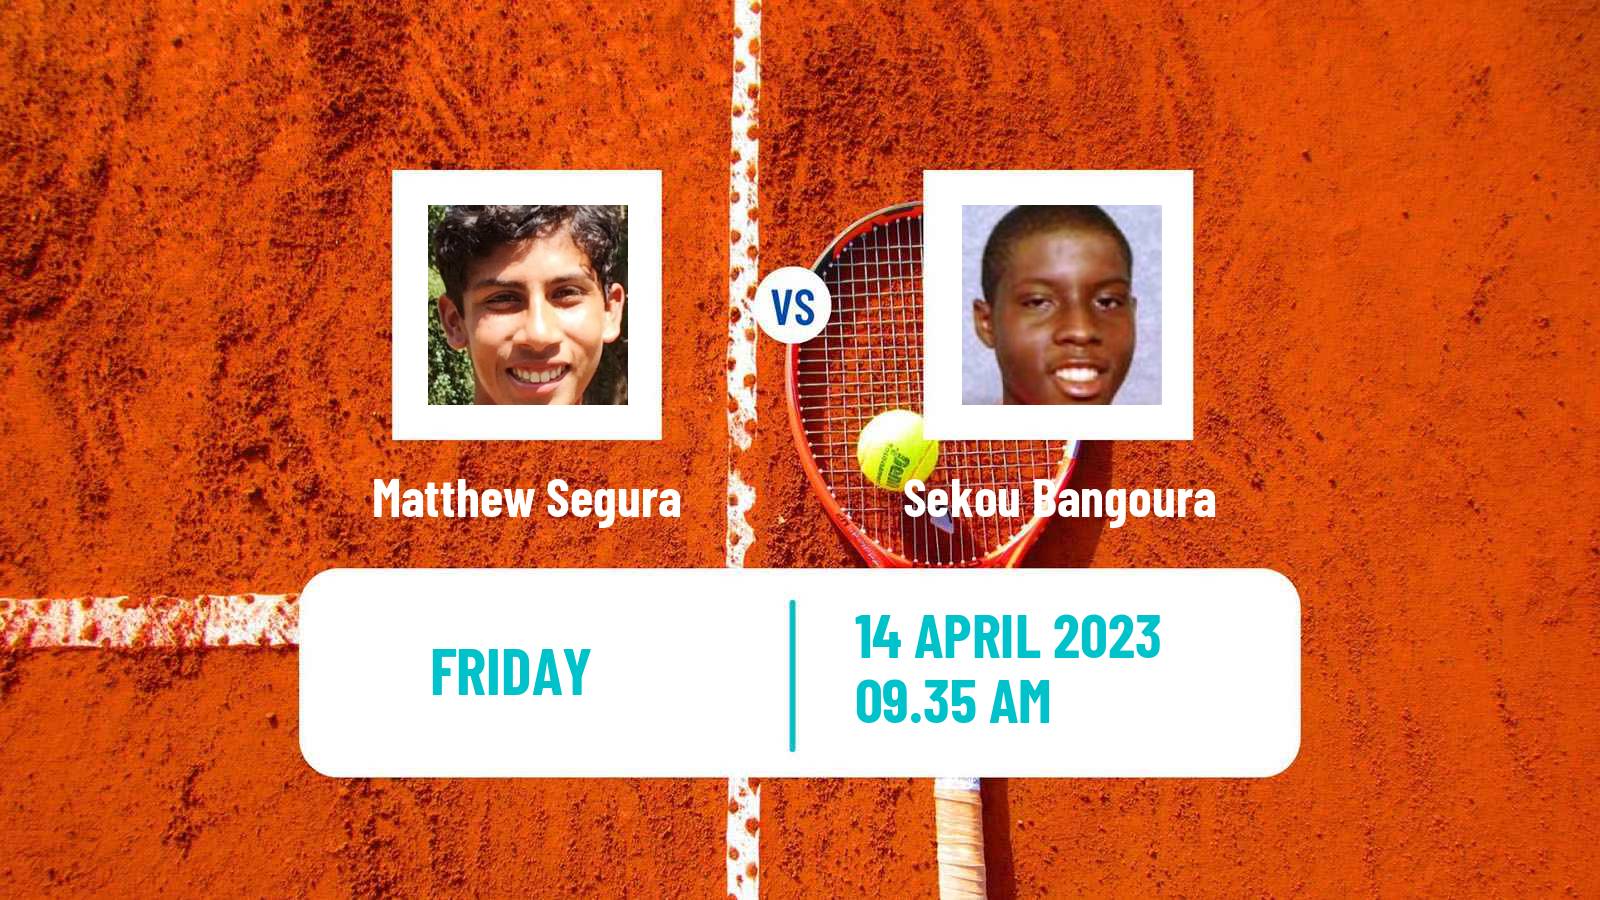 Tennis ITF Tournaments Matthew Segura - Sekou Bangoura